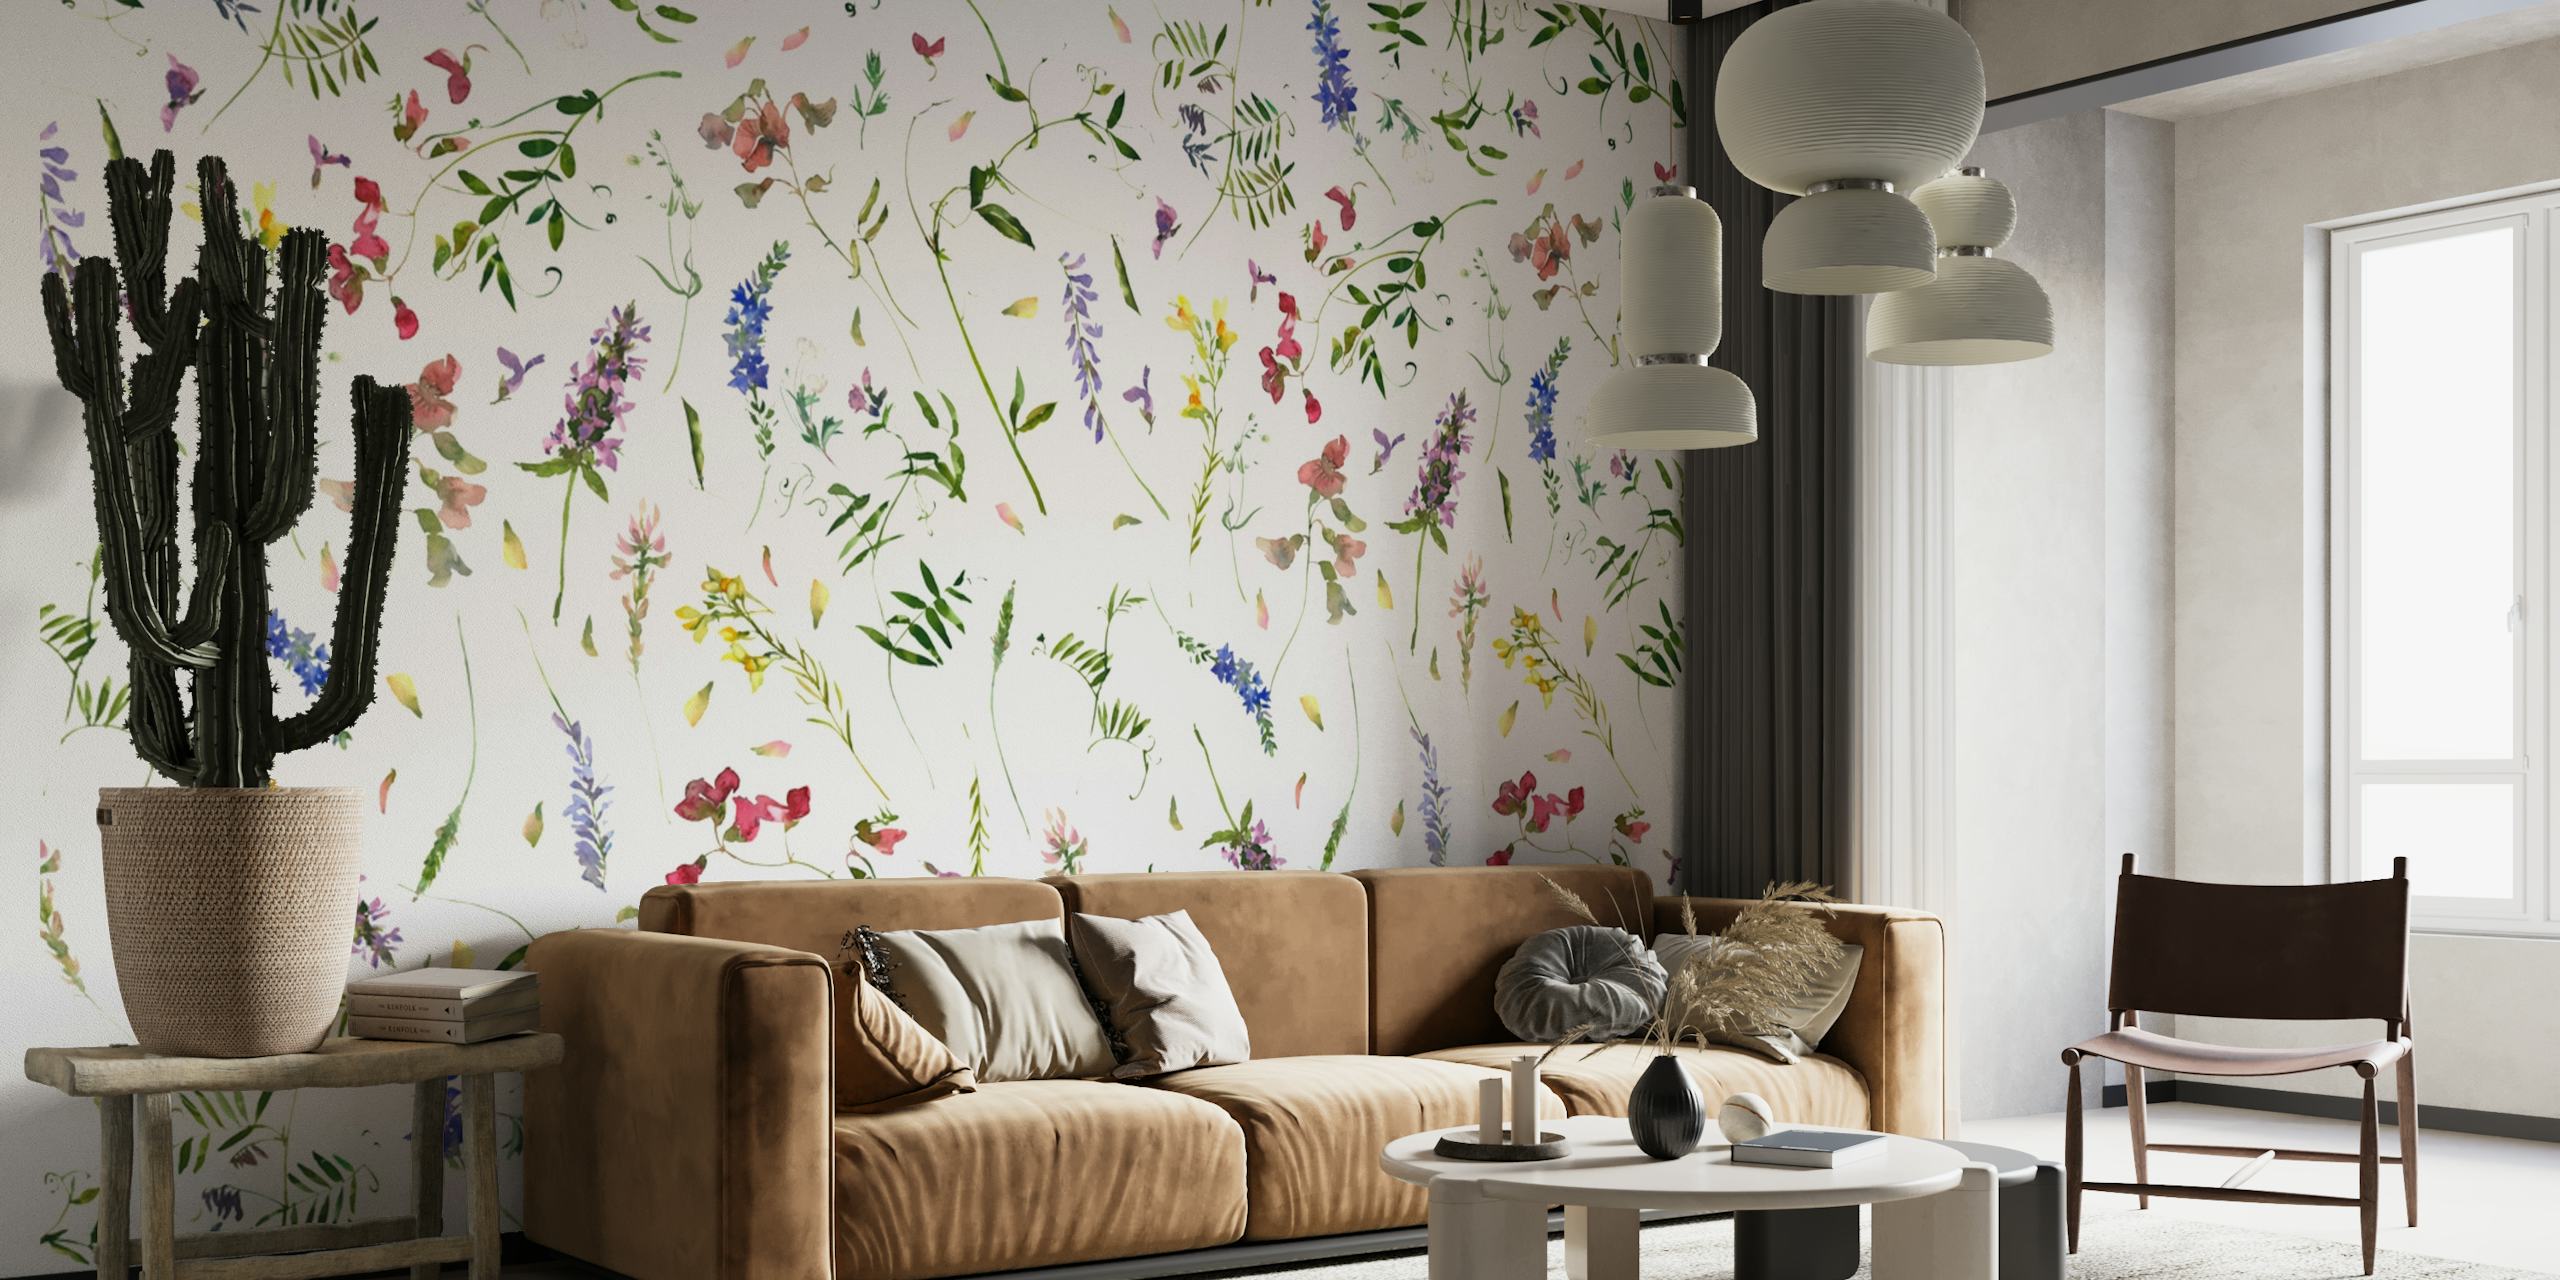 Ilustracija živopisnog zidnog murala na livadi s divljim cvijećem s raznim cvijećem na bijeloj pozadini.